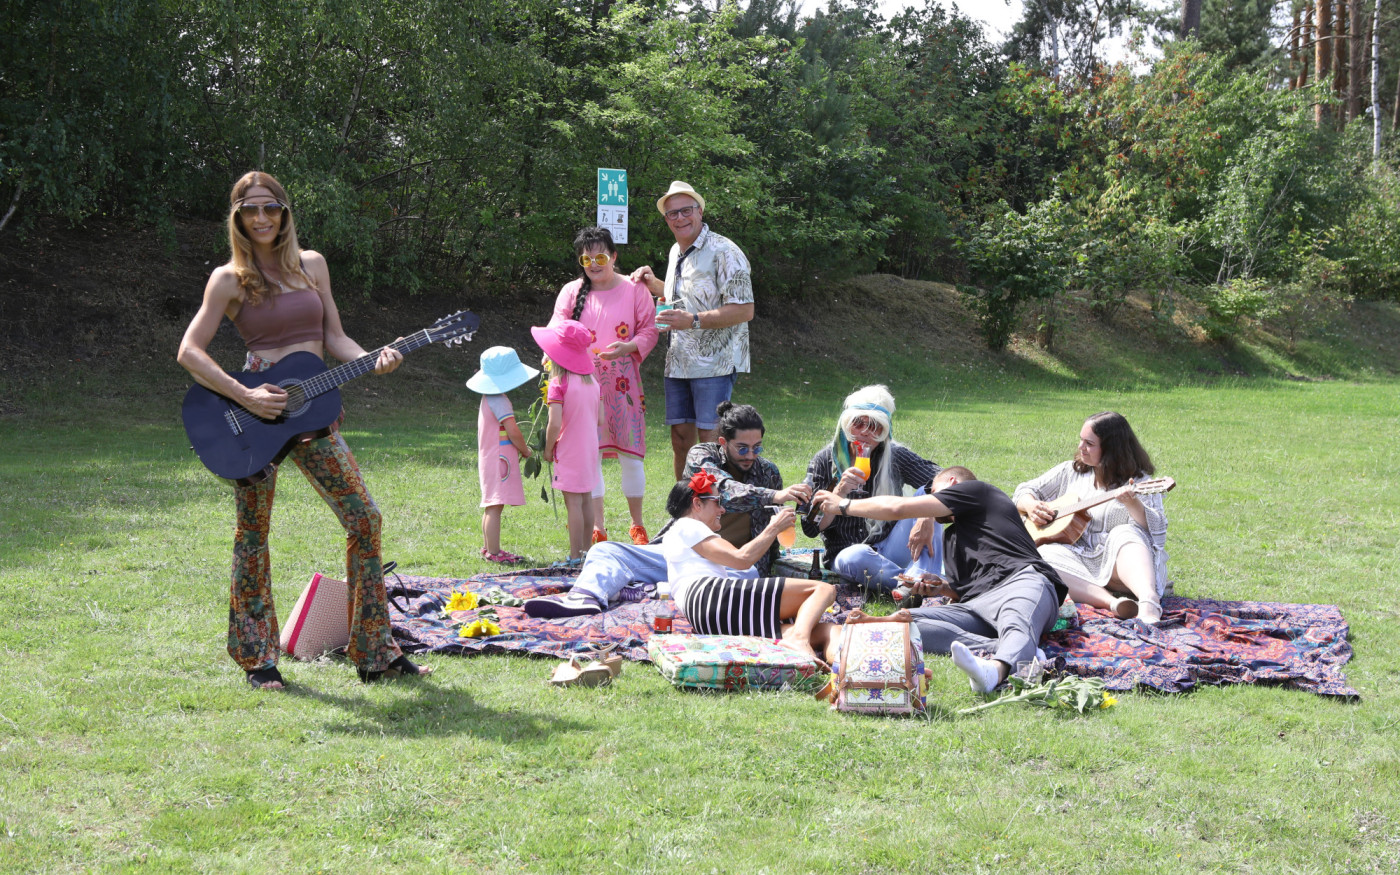 Woodstock in Gifhorn: Festival der Lebenshilfe - Am 3. September steigt bei freiem Eintritt im Heidland die chilligste Sommer-Party